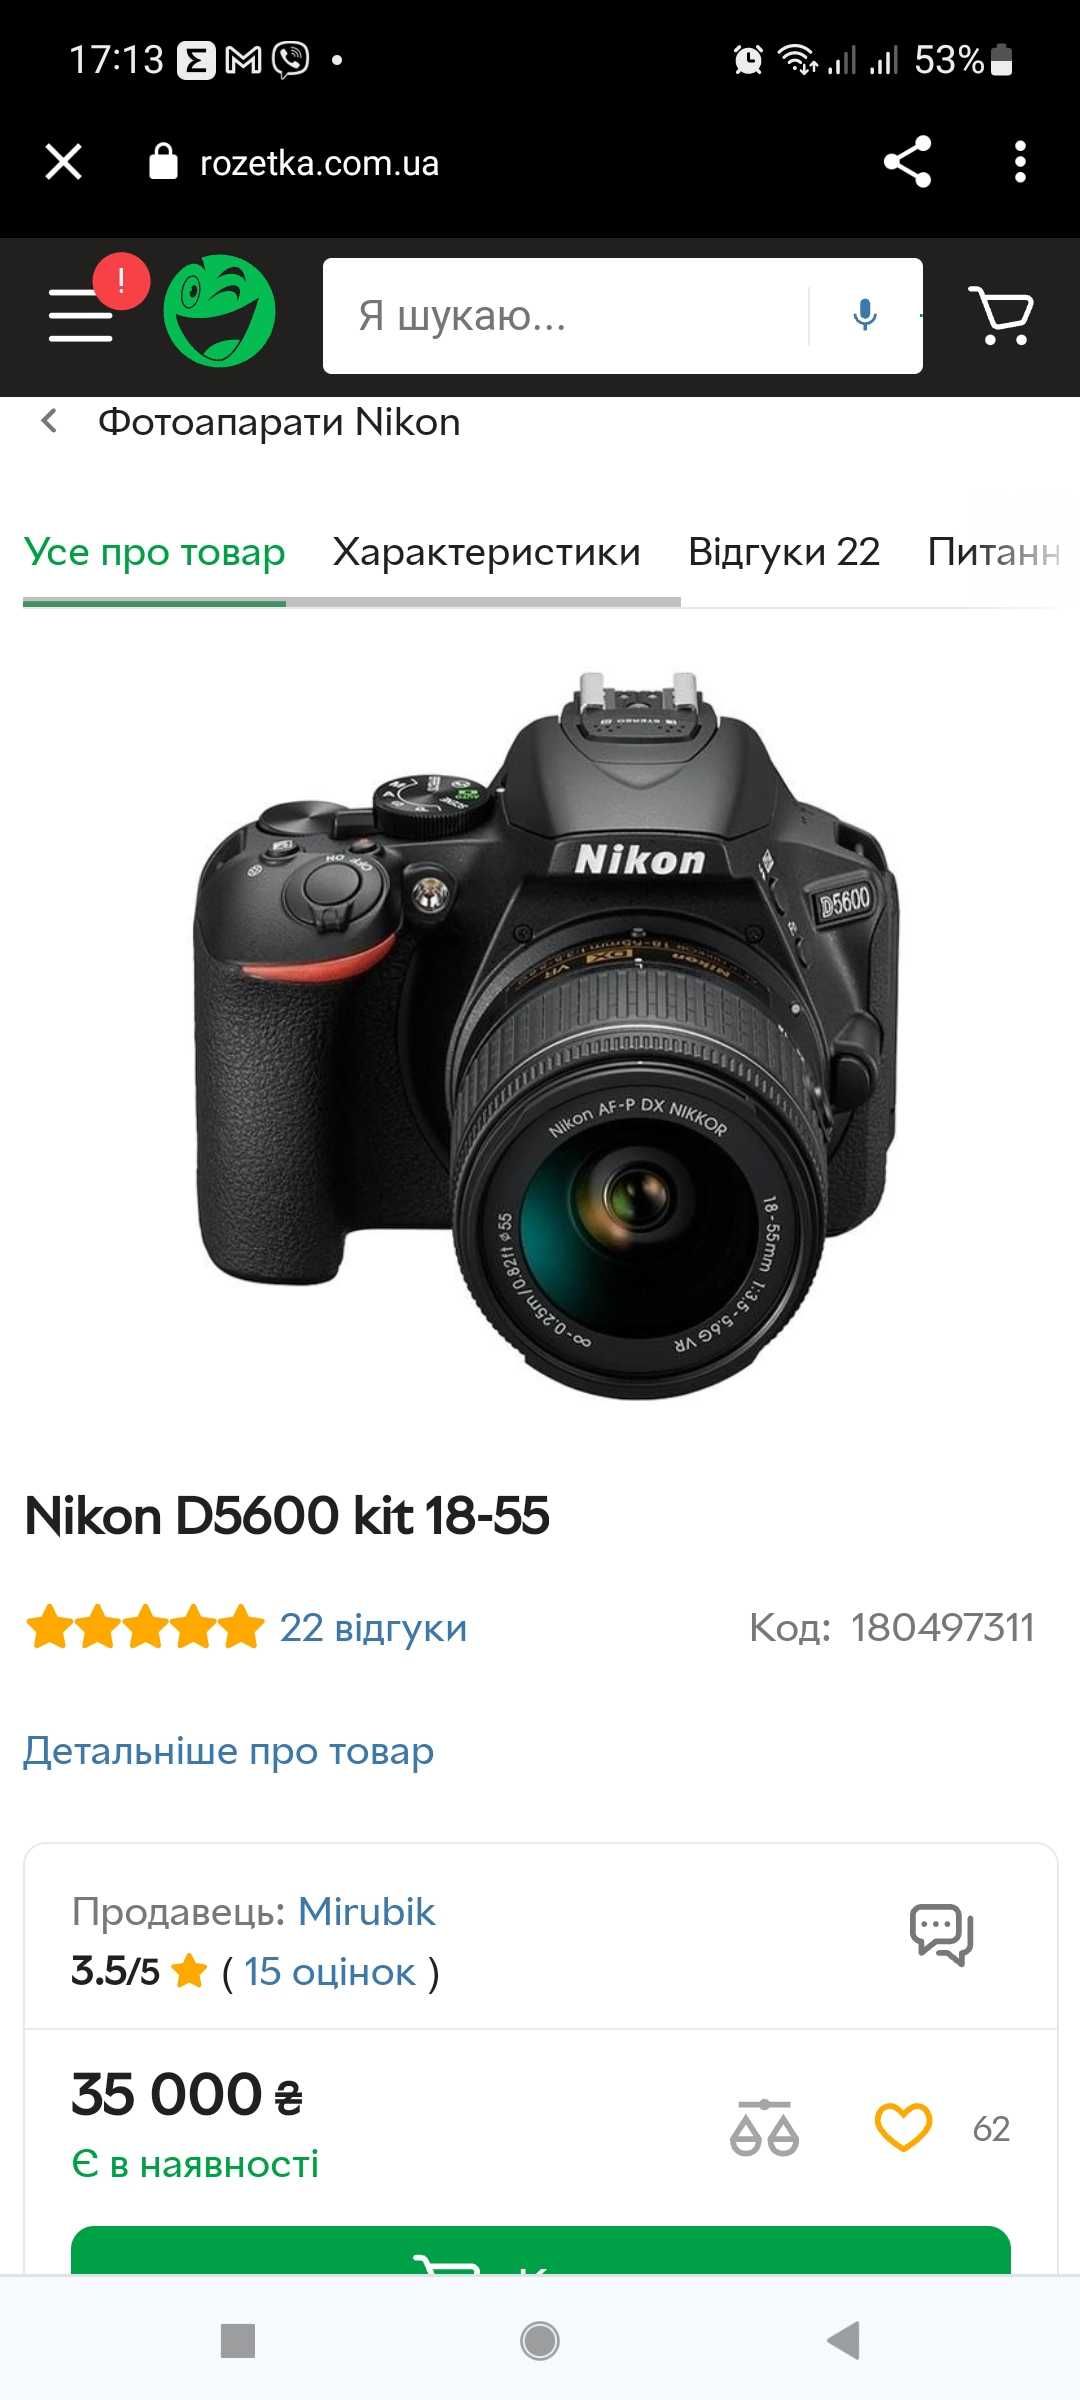 Nikon D5600 — современный цифровой зеркальный фотоаппарат